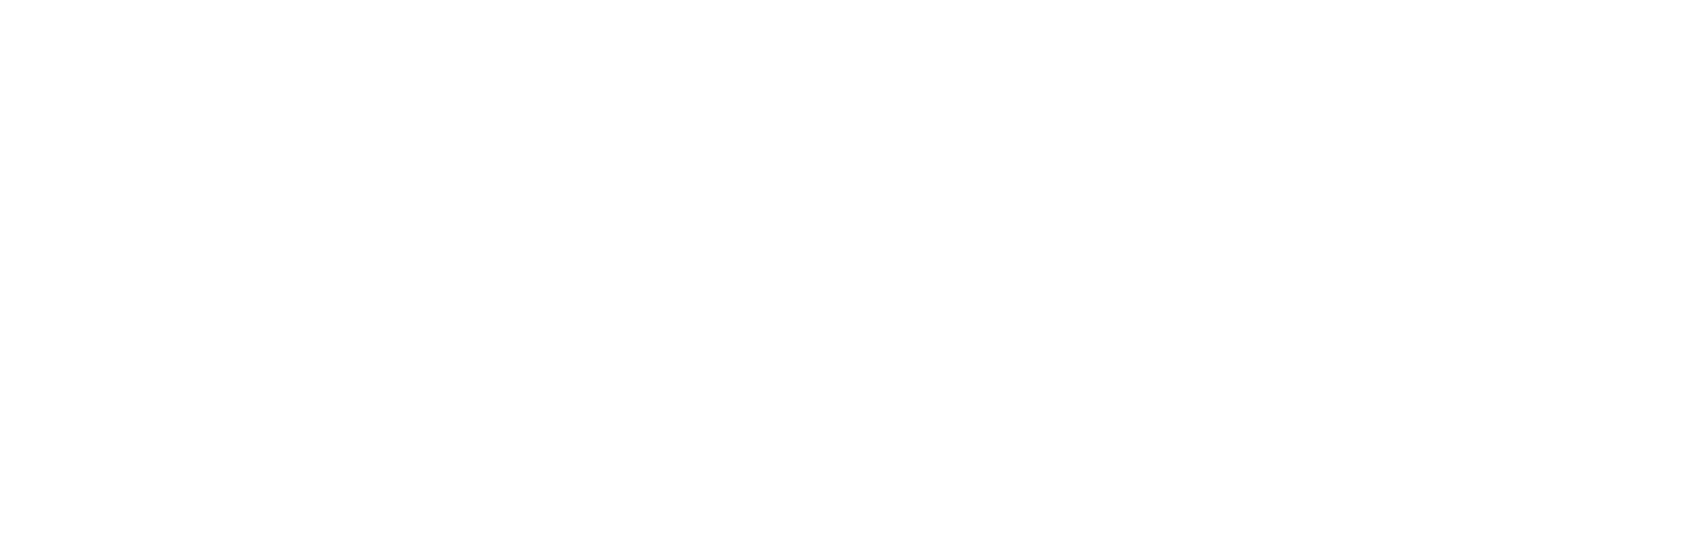 businesscrm.io